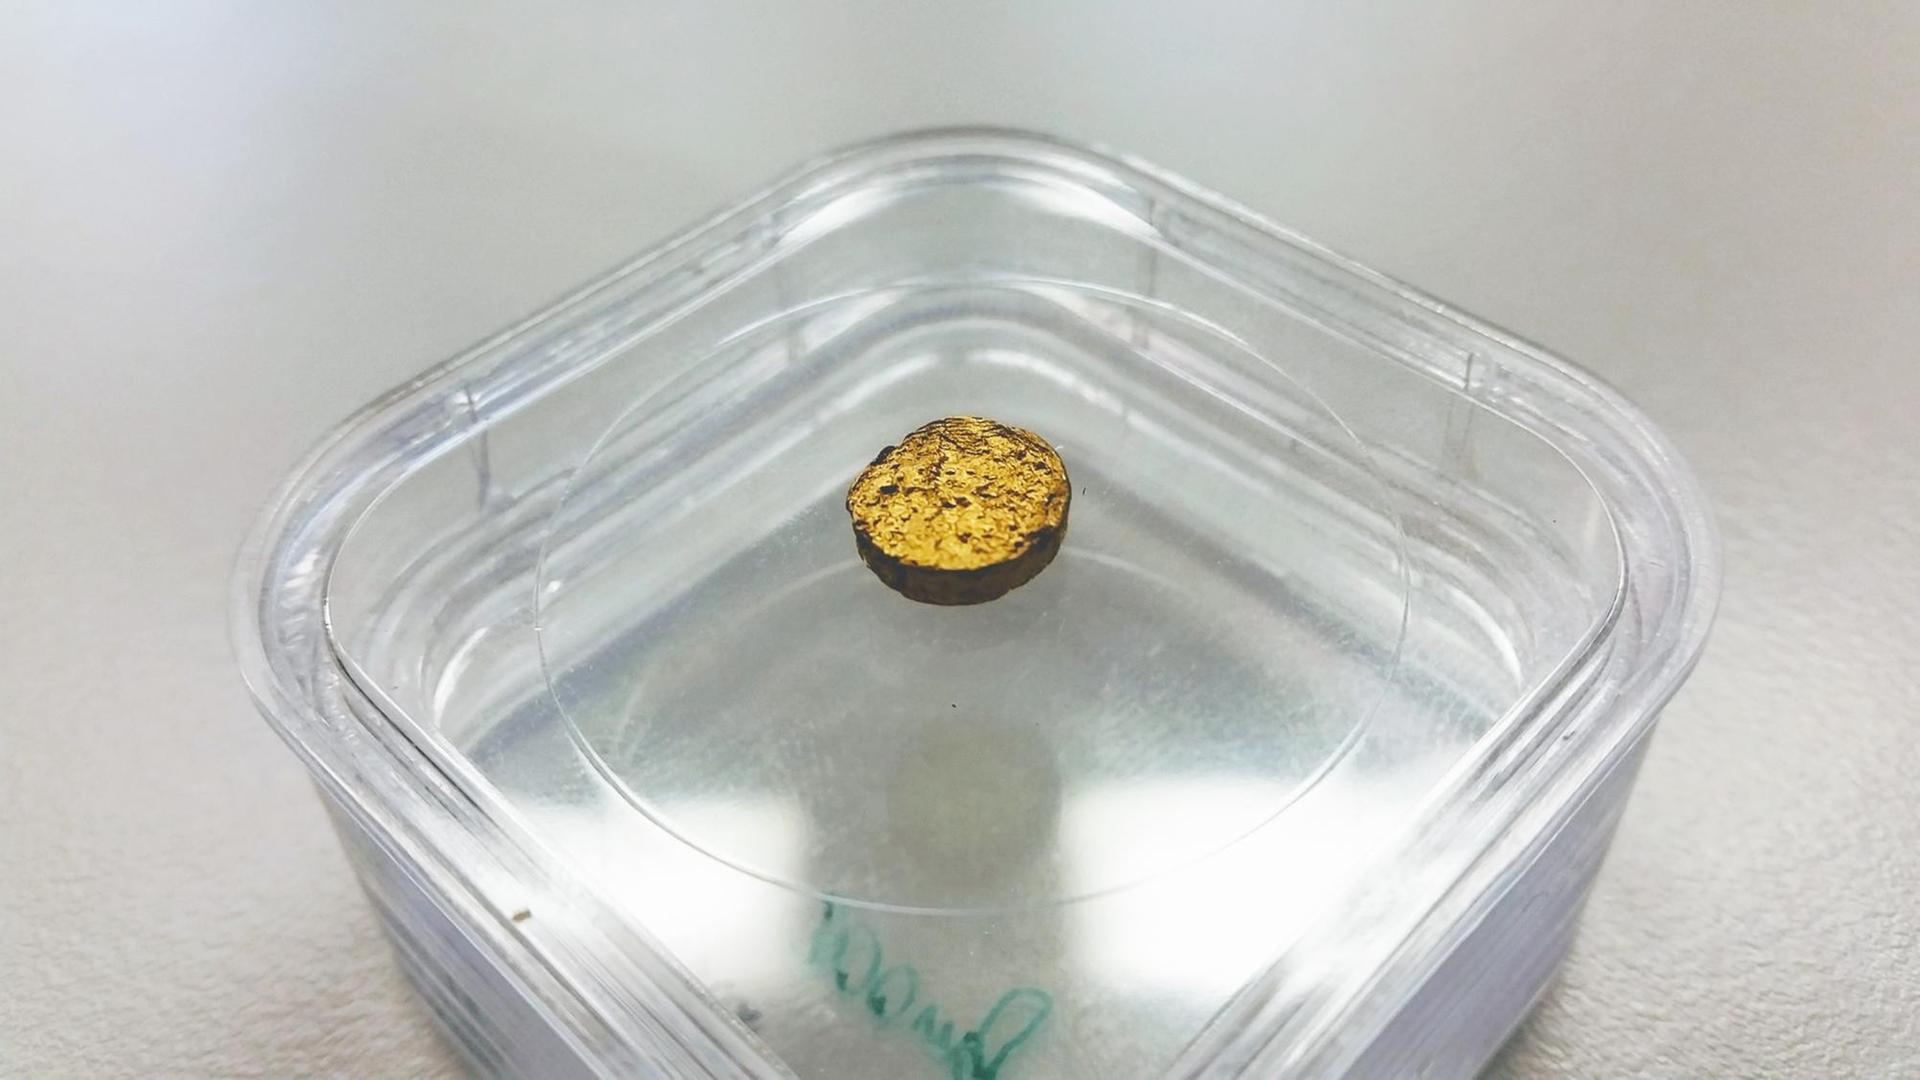 Das Bild zeigt ein goldenfarbenes, rundes Scheibchen, das in einer transparenten Plastik-Schale liegt.